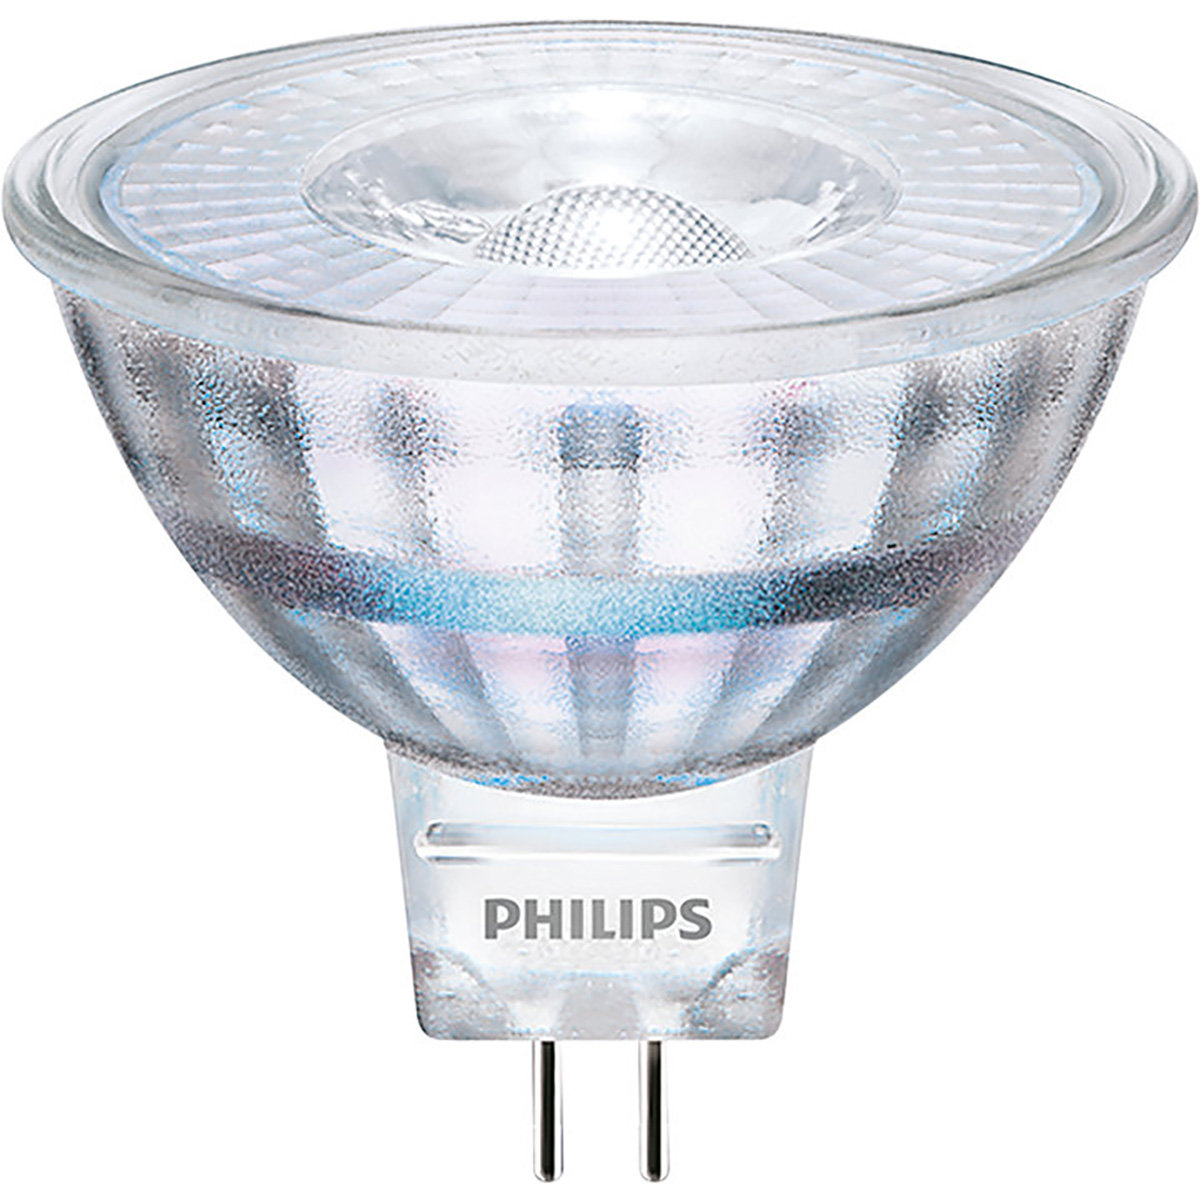 Philips Żarówka światła LED LED 35W MR16 WW 36D RF ND SRT4 GU5.3 929002494603